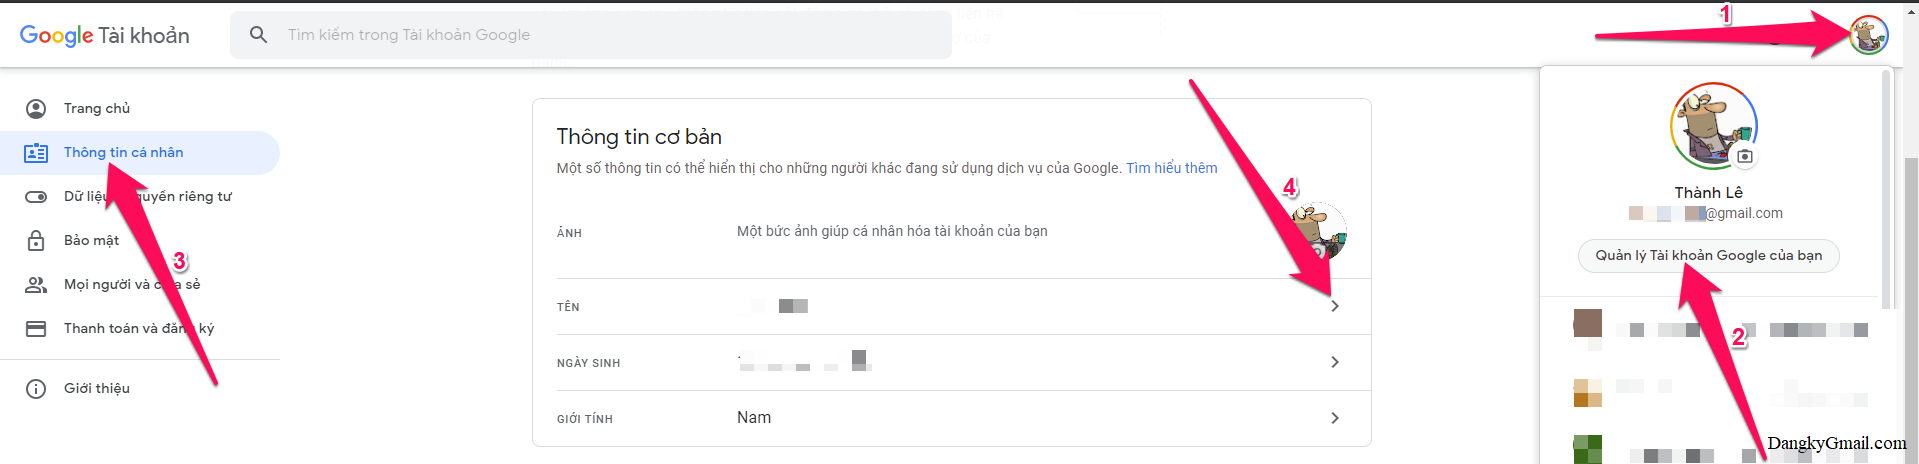 Hoặc nhấn vào Avatar tài khoản Gmail của bạn chọn Quản lý Tài khoản Google của bạn → Thông tin cá nhân → Tên